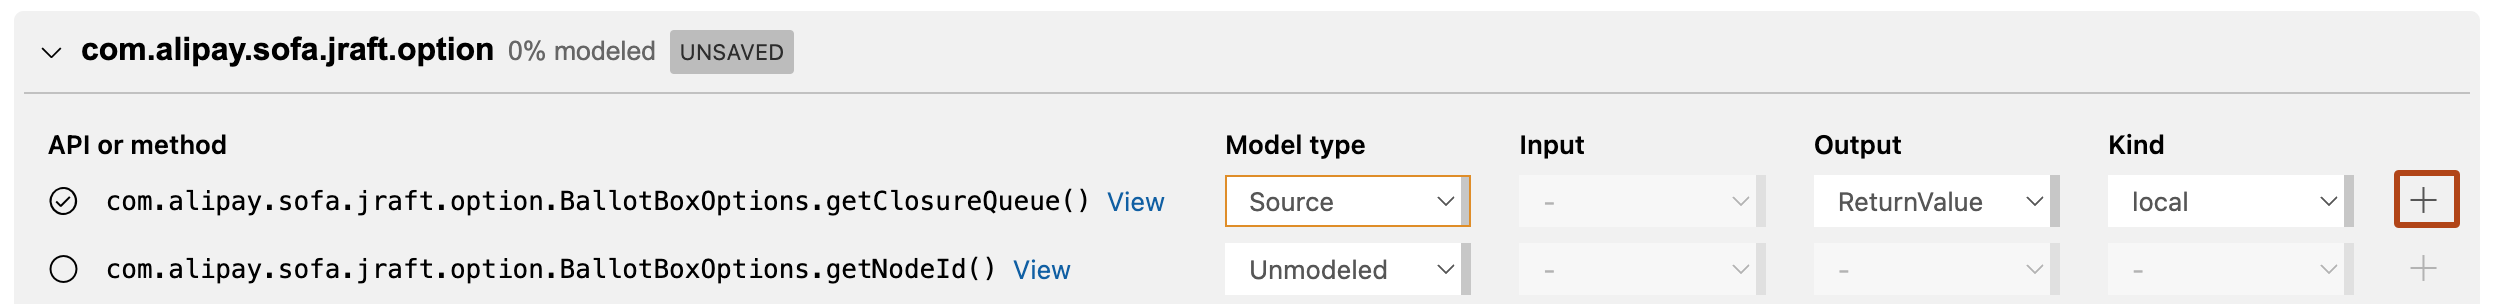 Captura de tela do modo de exibição "Modo de dependência" do editor de pacotes de modelos do CodeQL no Visual Studio Code mostrando os métodos públicos disponíveis no pacote "com.alipay.soft.jraft.option" pronto para modelagem. A opção "Exibir" para o primeiro método está realçada com um contorno laranja-escuro.